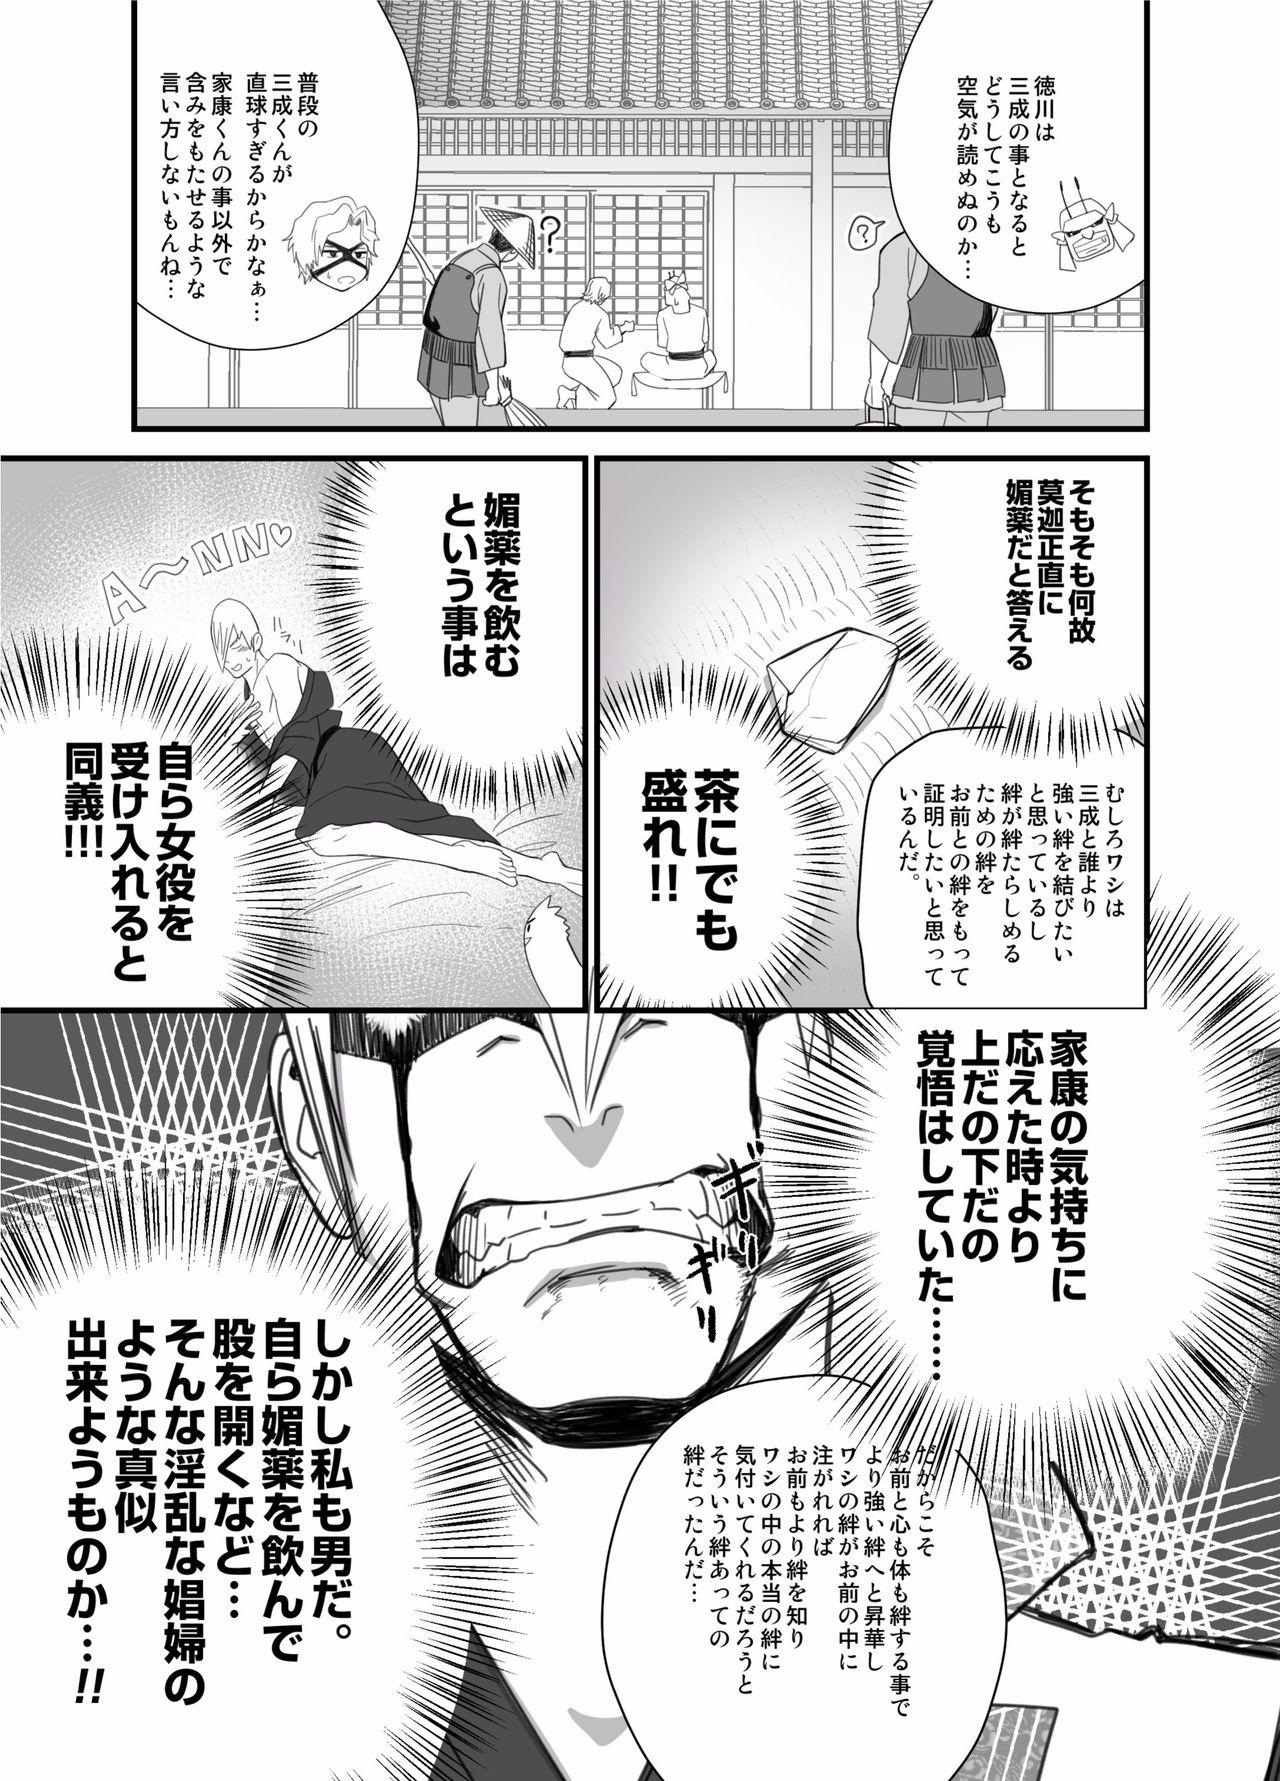 Pantyhose Nichiyu Saki - Sengoku basara Mouth - Page 9